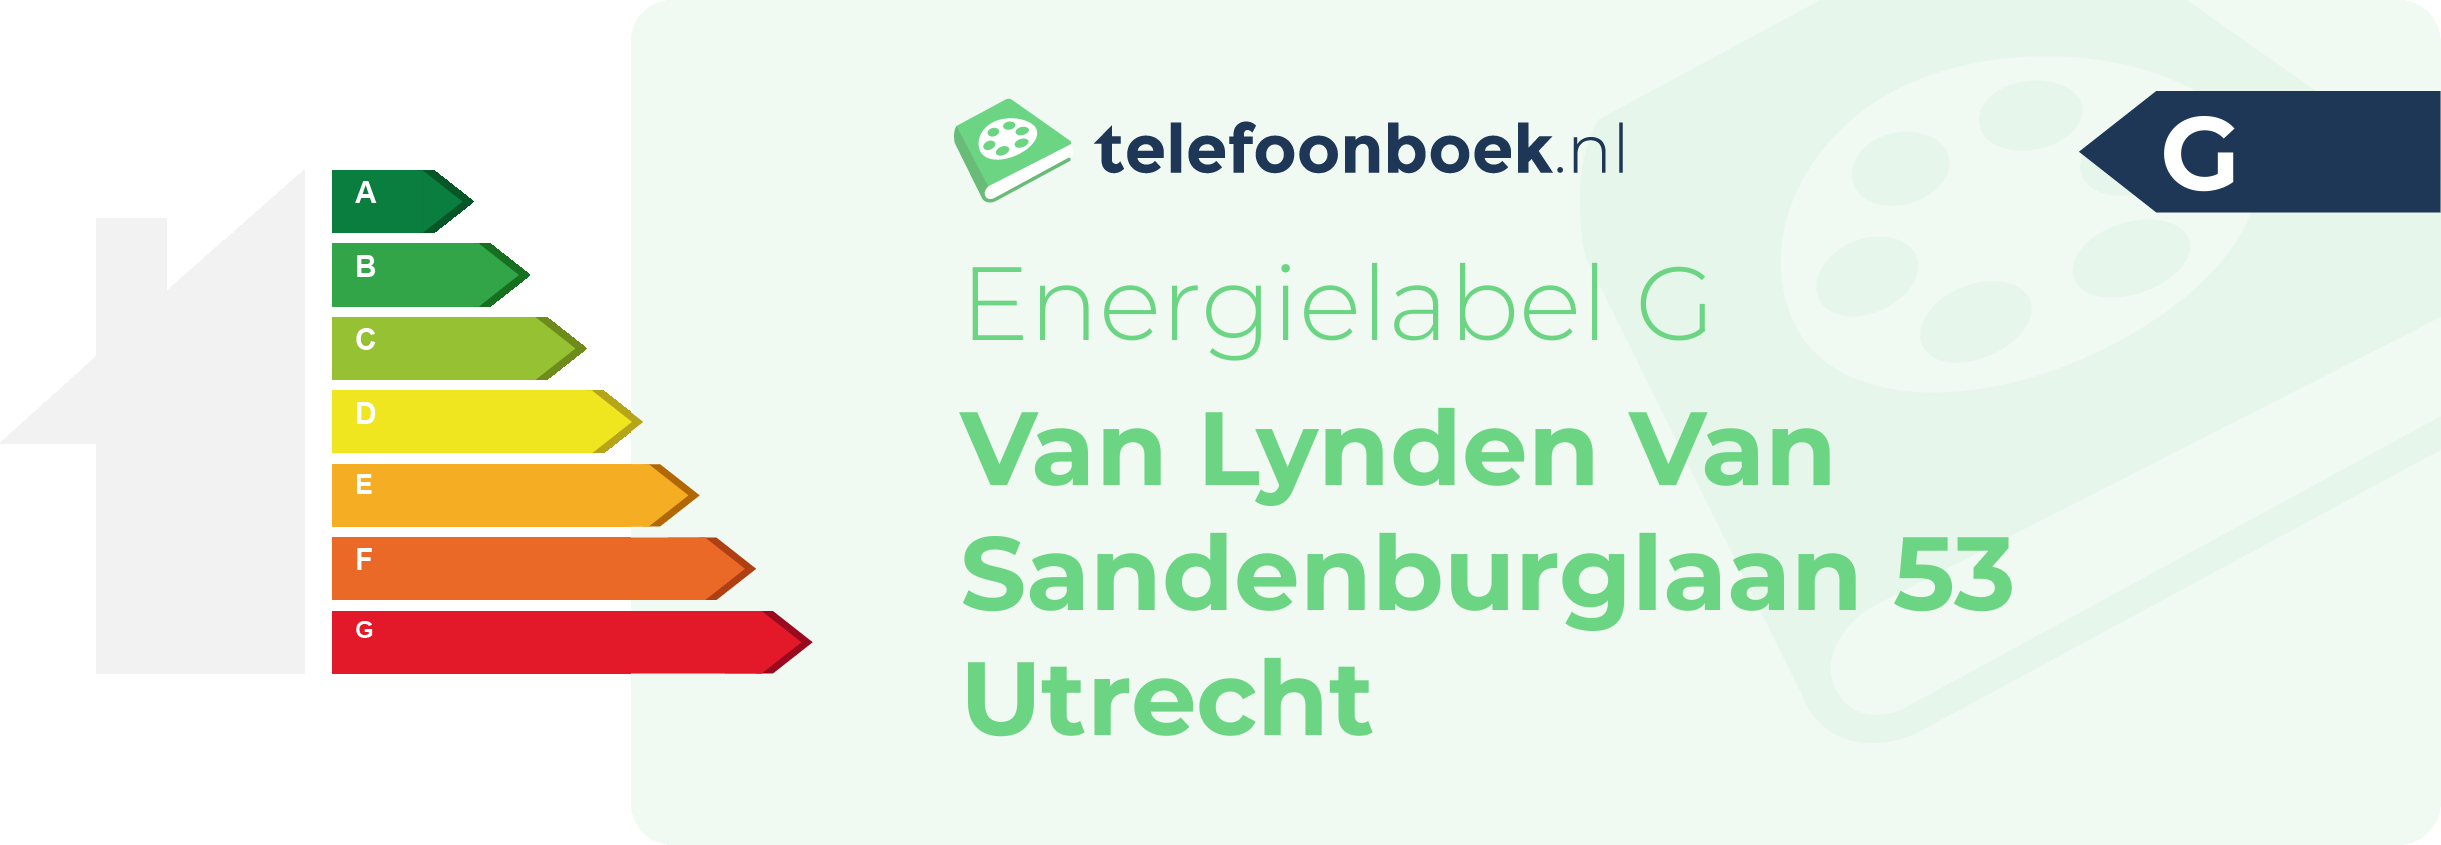 Energielabel Van Lynden Van Sandenburglaan 53 Utrecht